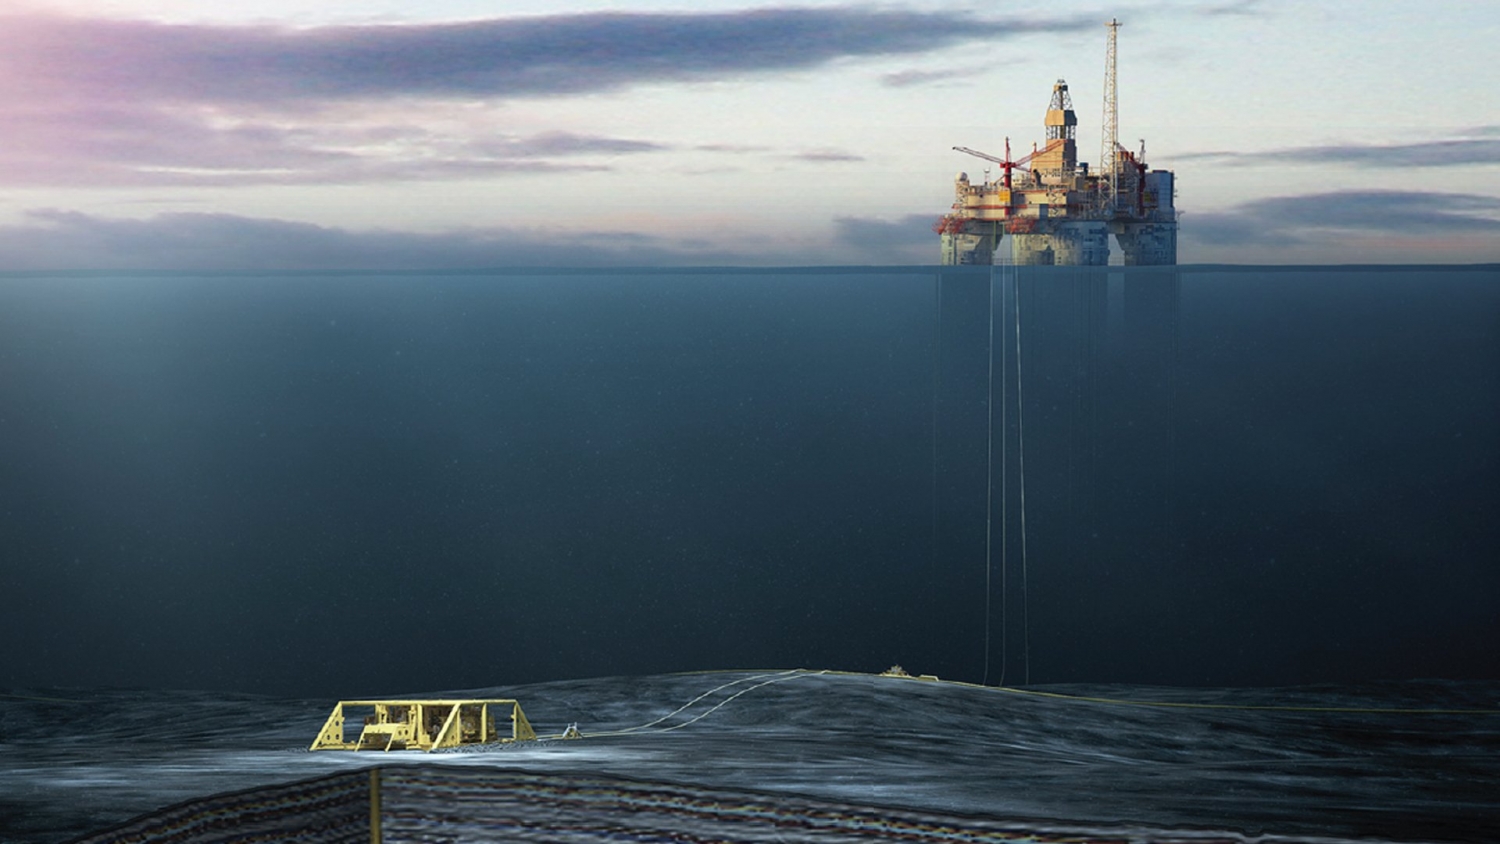 Aker Solutions trúng thầu hợp đồng hệ thống sản xuất dưới biển ngoài khơi Na Uy